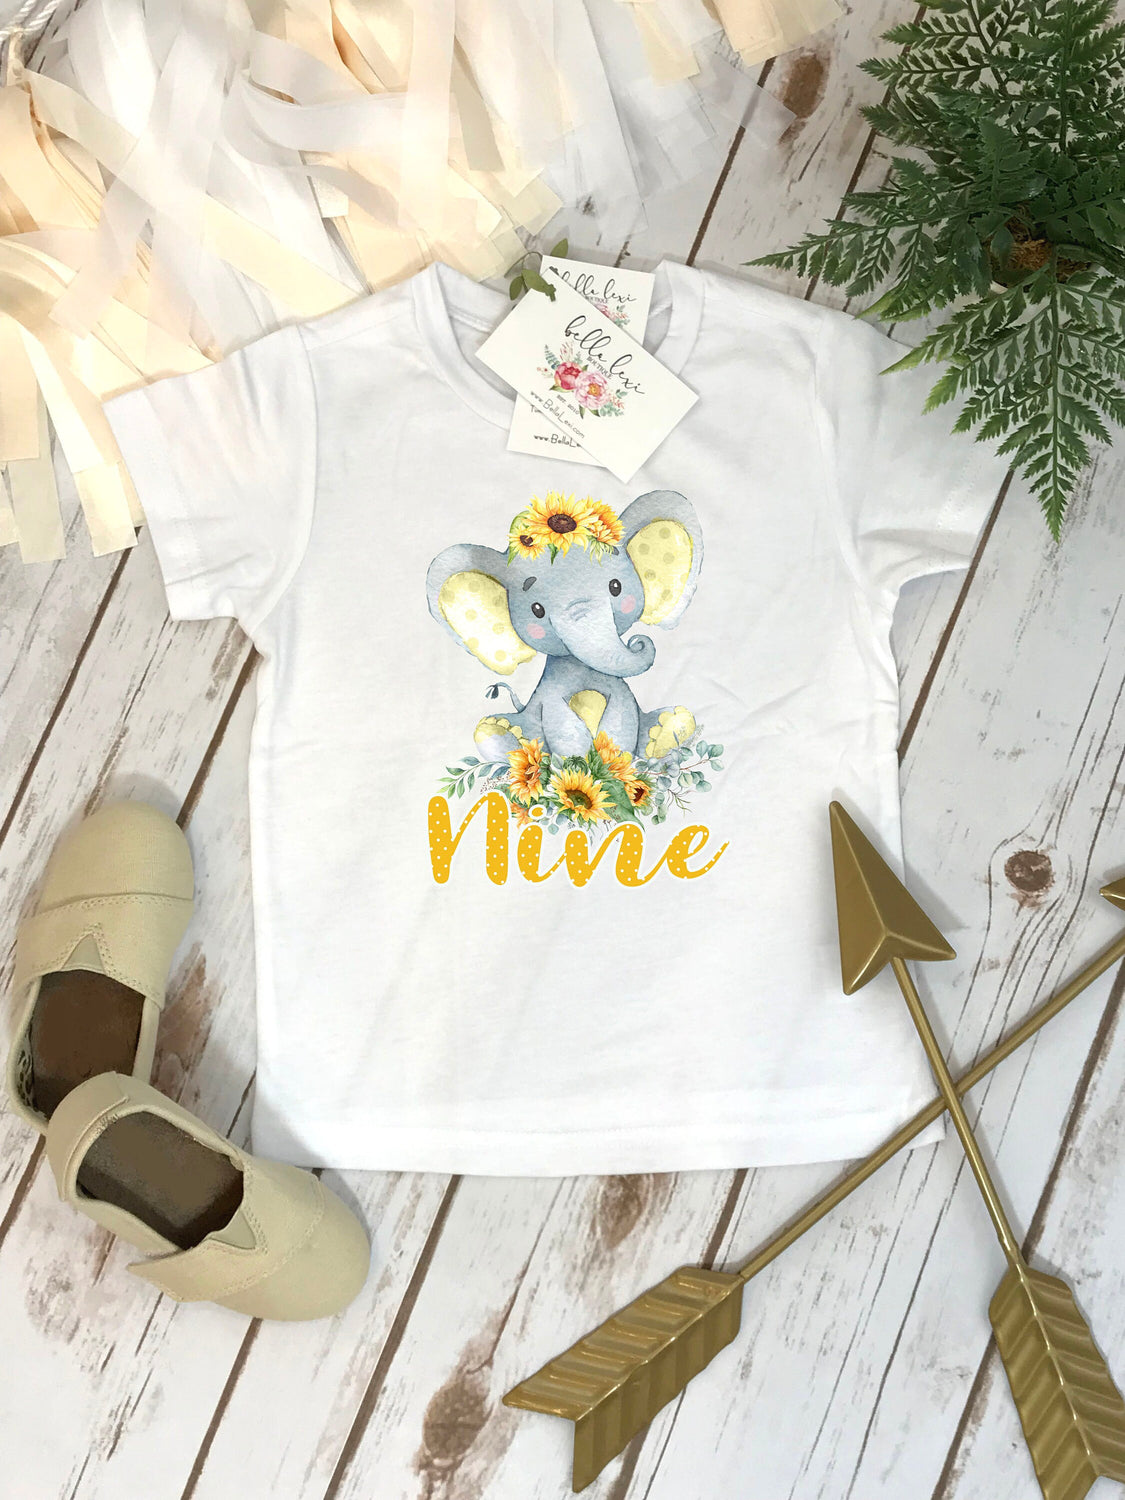 Ninth Birthday Shirt, Elephant Theme, Birthday Shirt, 9th Birthday, Girl Birthday, Girl Birthday Gift, Elephant Party, Boho Birthday,